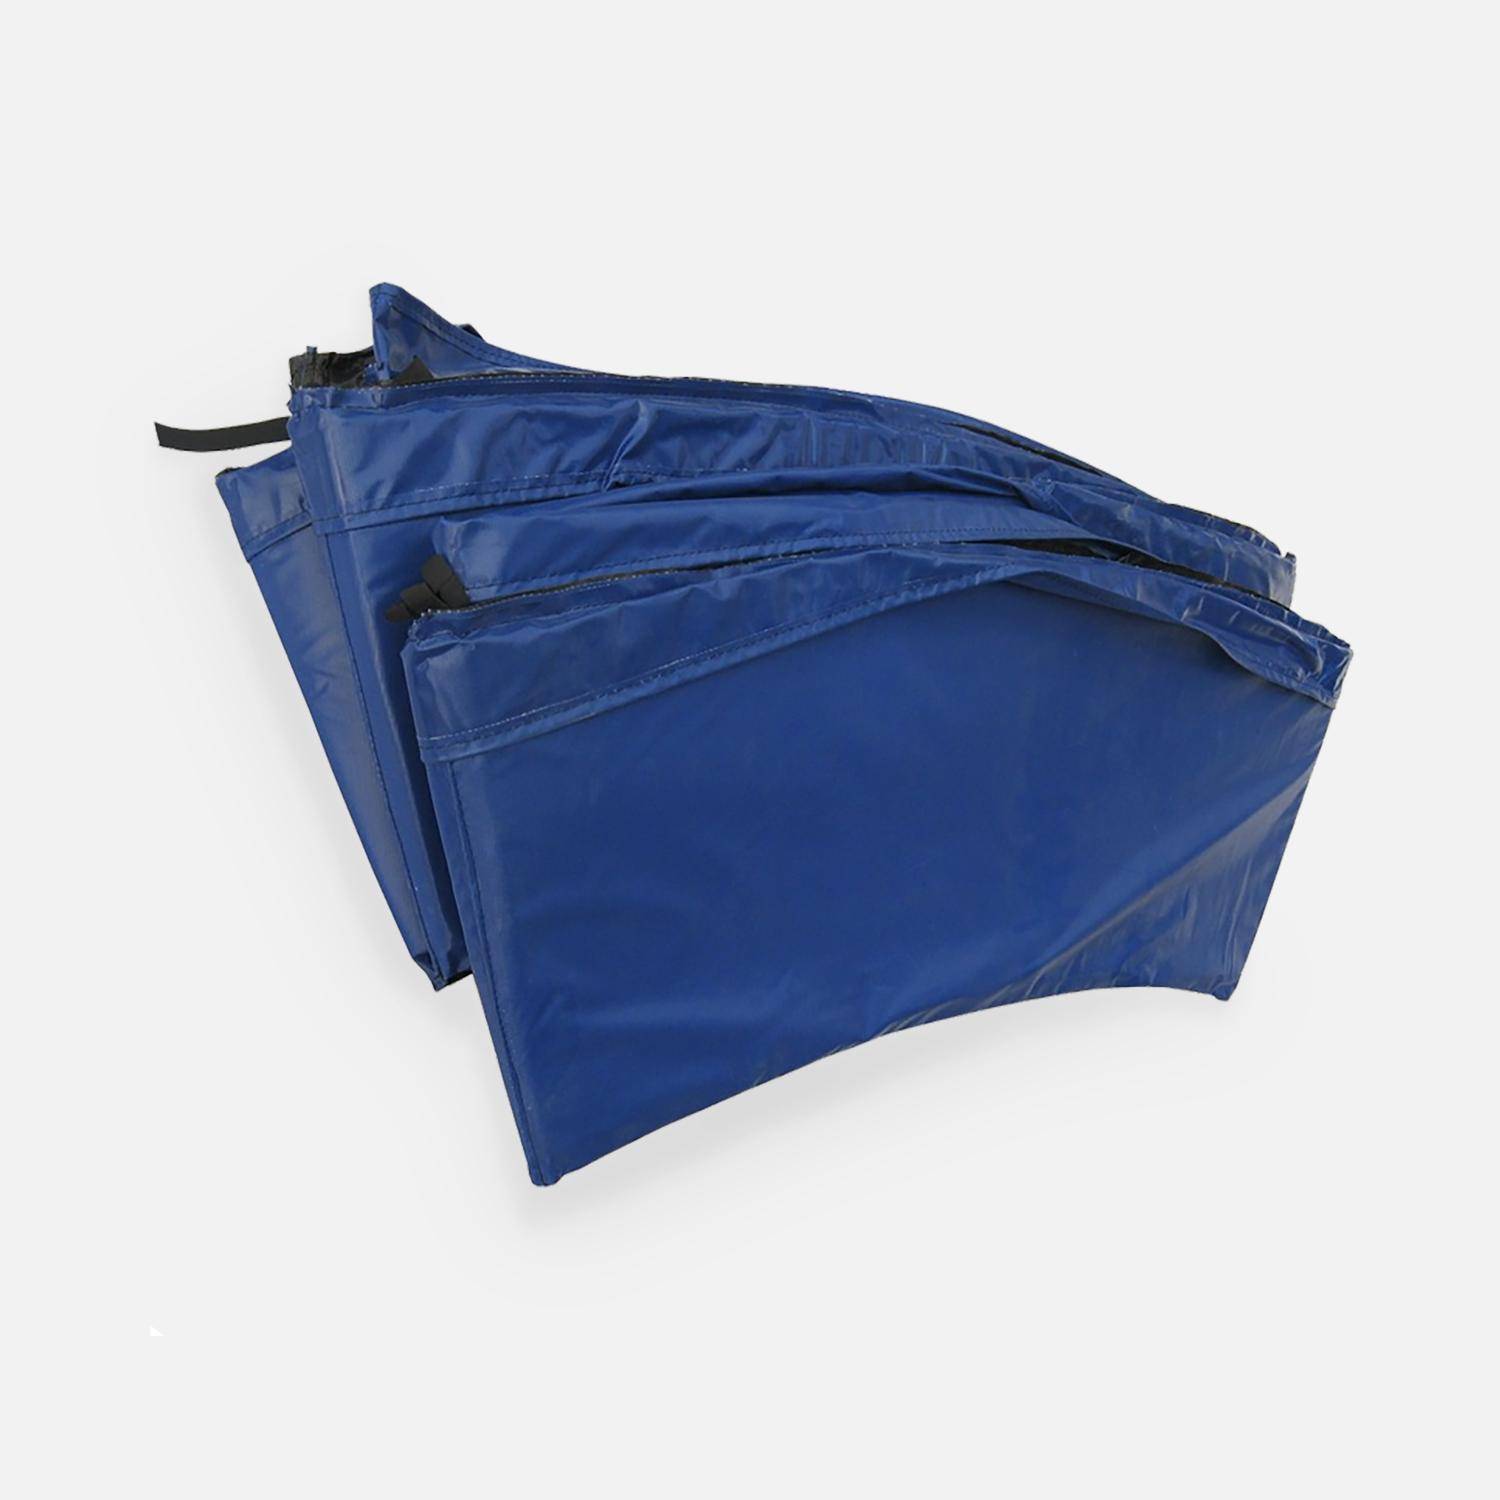 Almofada protetora de molas, em azul, para cama elástica de 245 cm - Pluton XXL,sweeek,Photo1